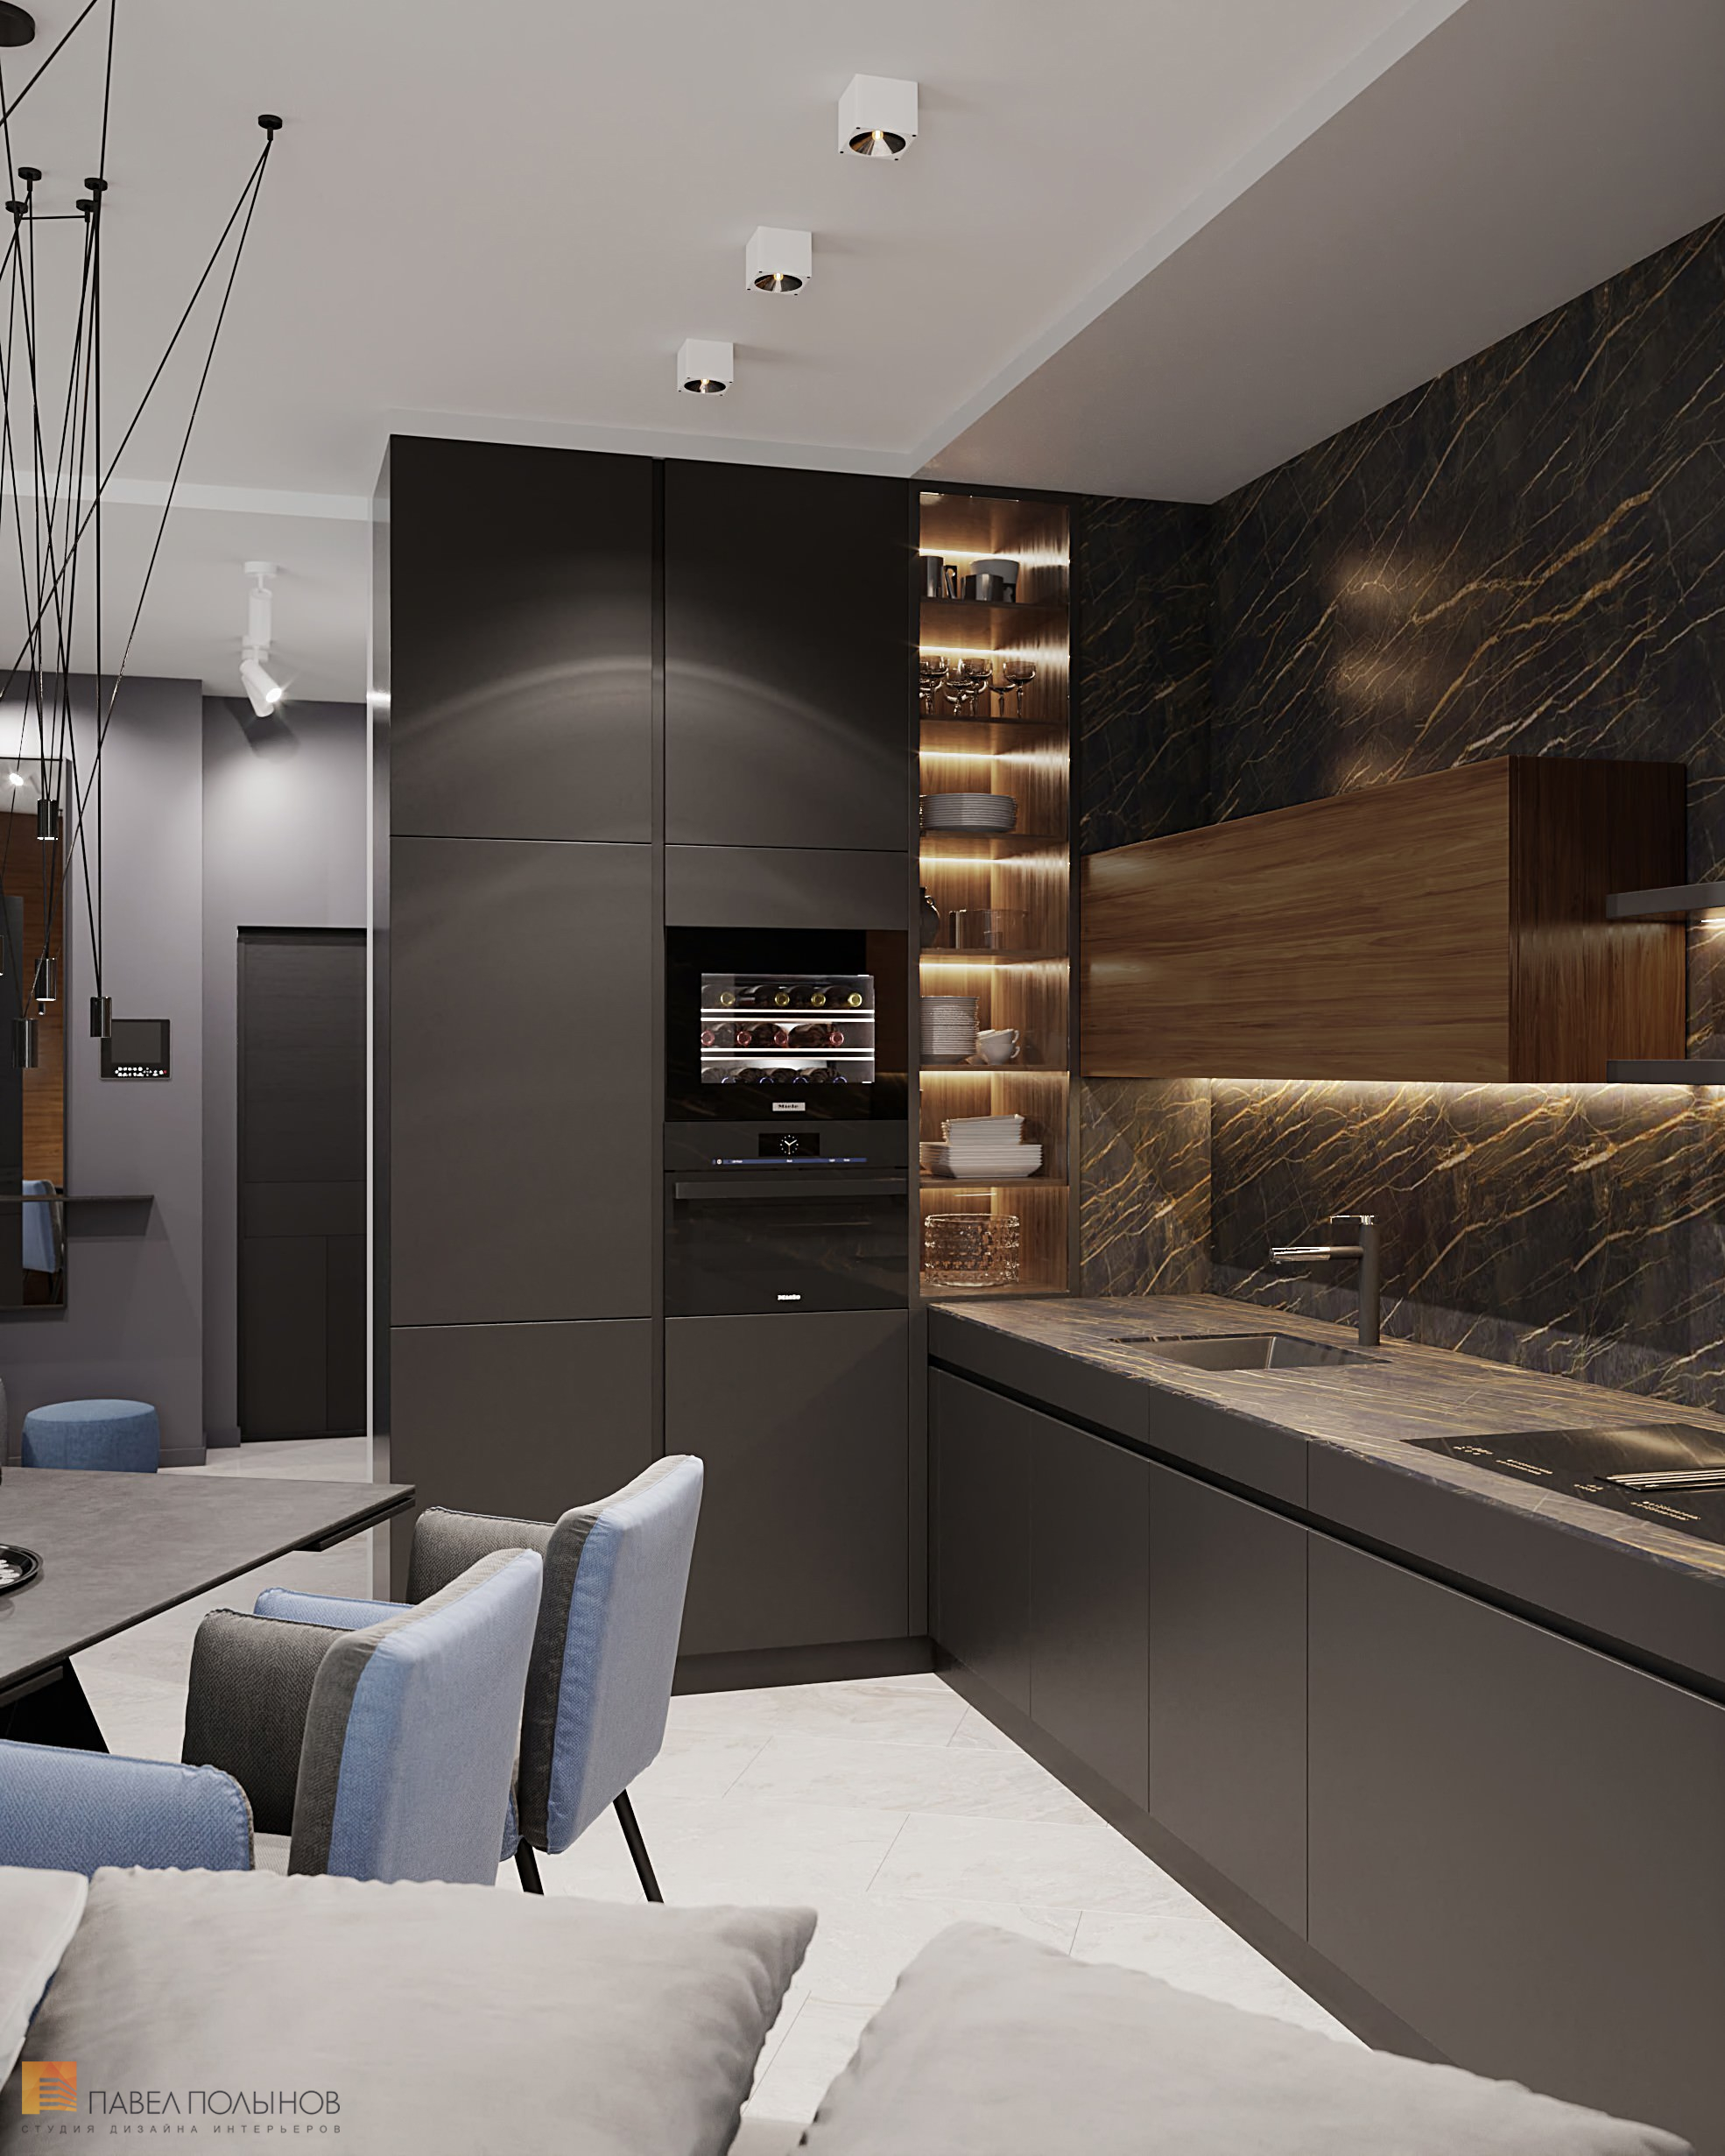 Фото интерьер кухни-гостиной из проекта «Интерьер квартиры в современном стиле, ЖК «Остров», 90 кв.м.»